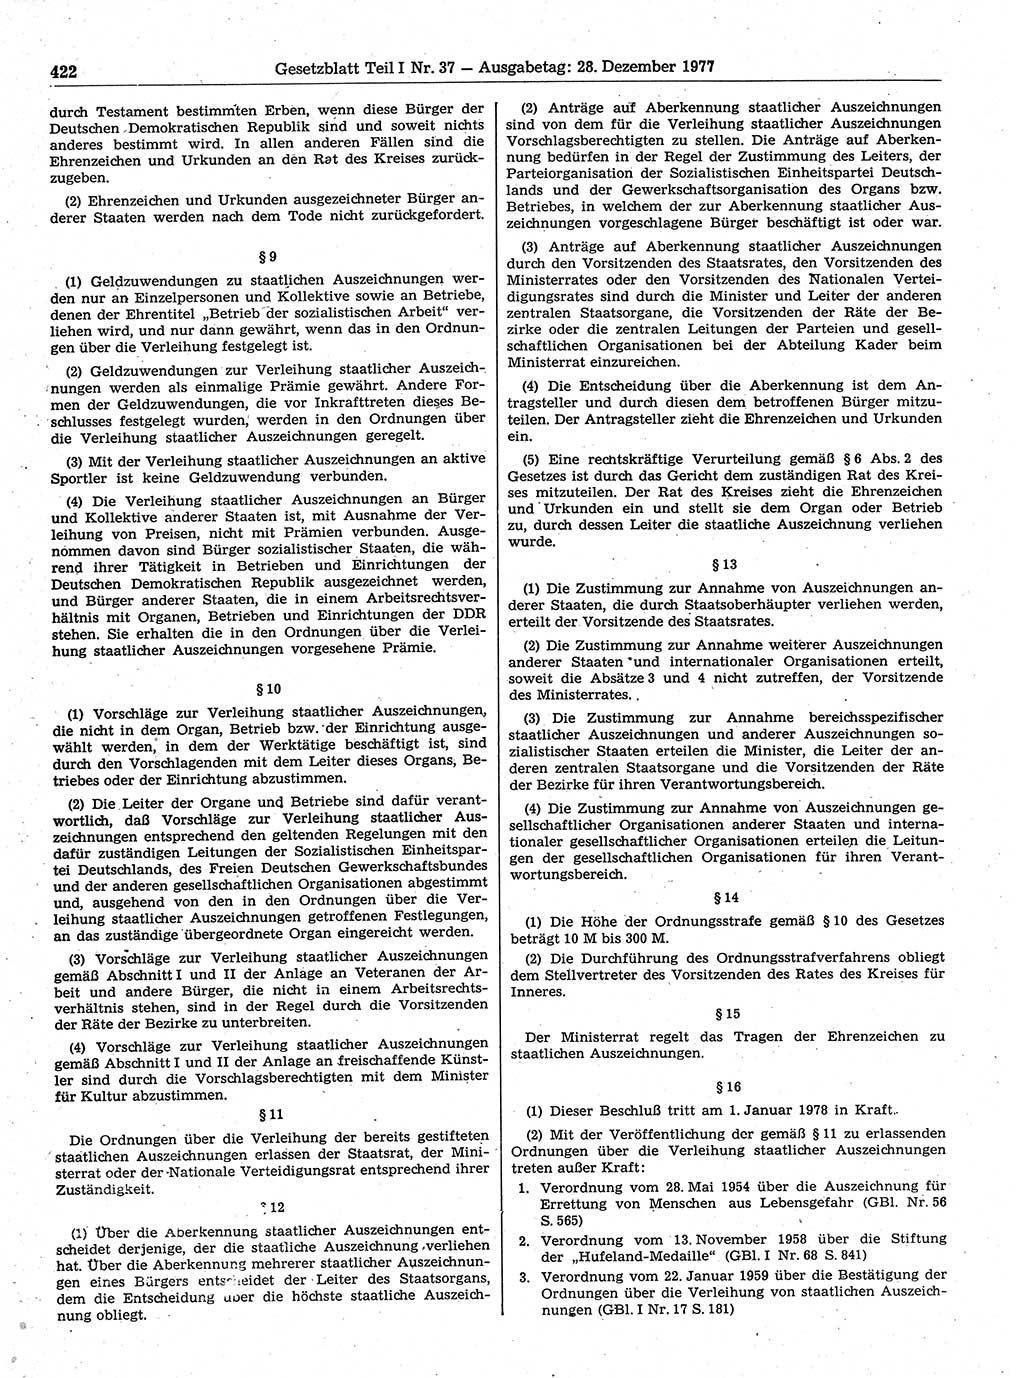 Gesetzblatt (GBl.) der Deutschen Demokratischen Republik (DDR) Teil Ⅰ 1977, Seite 422 (GBl. DDR Ⅰ 1977, S. 422)